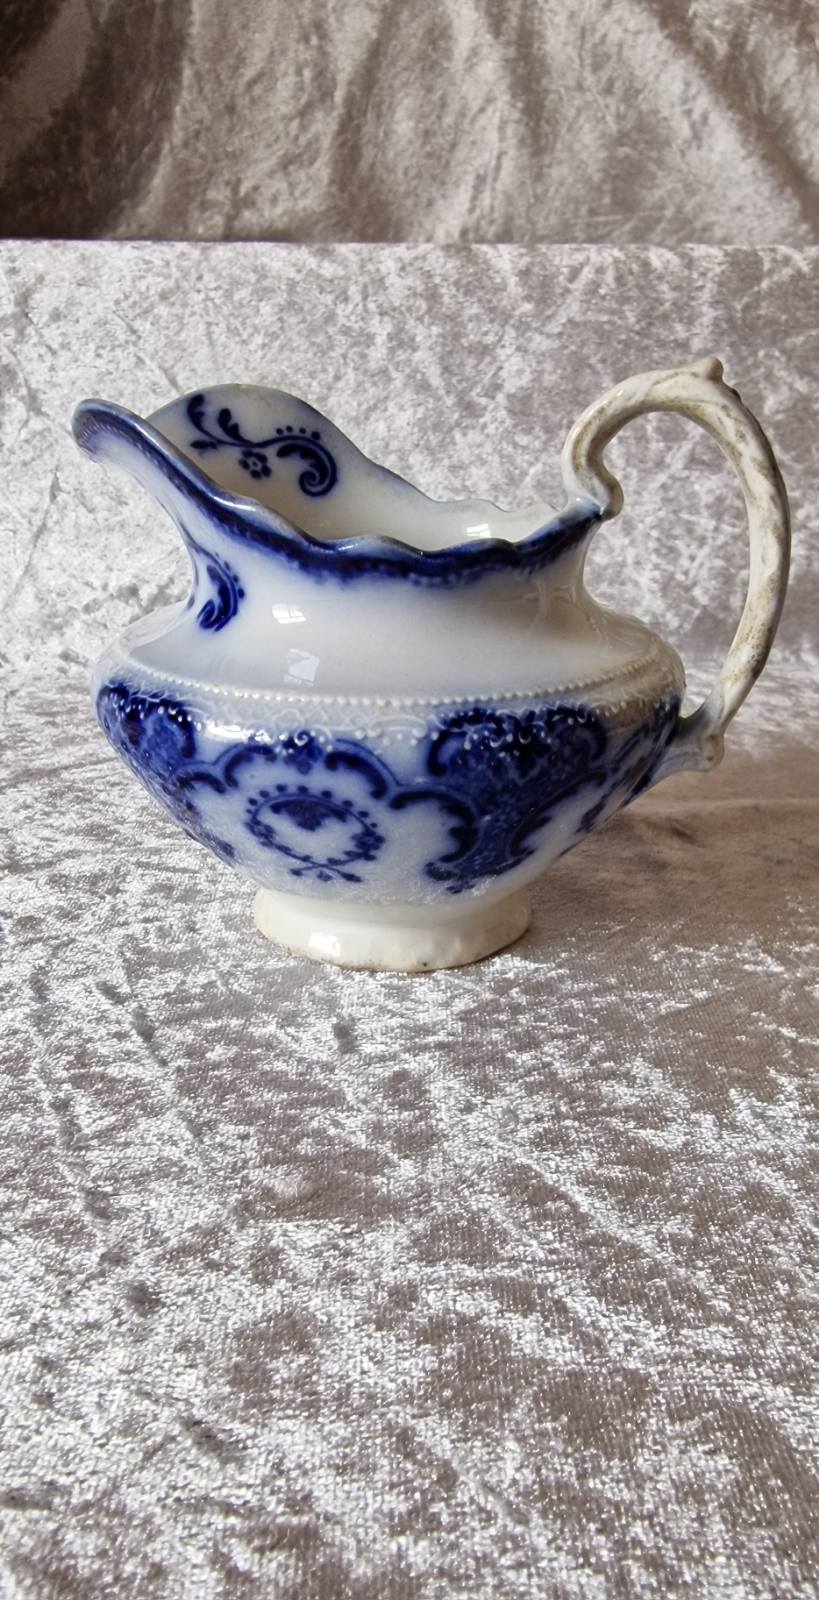 Alton cream jug made by W.H. Grindley c1890s.